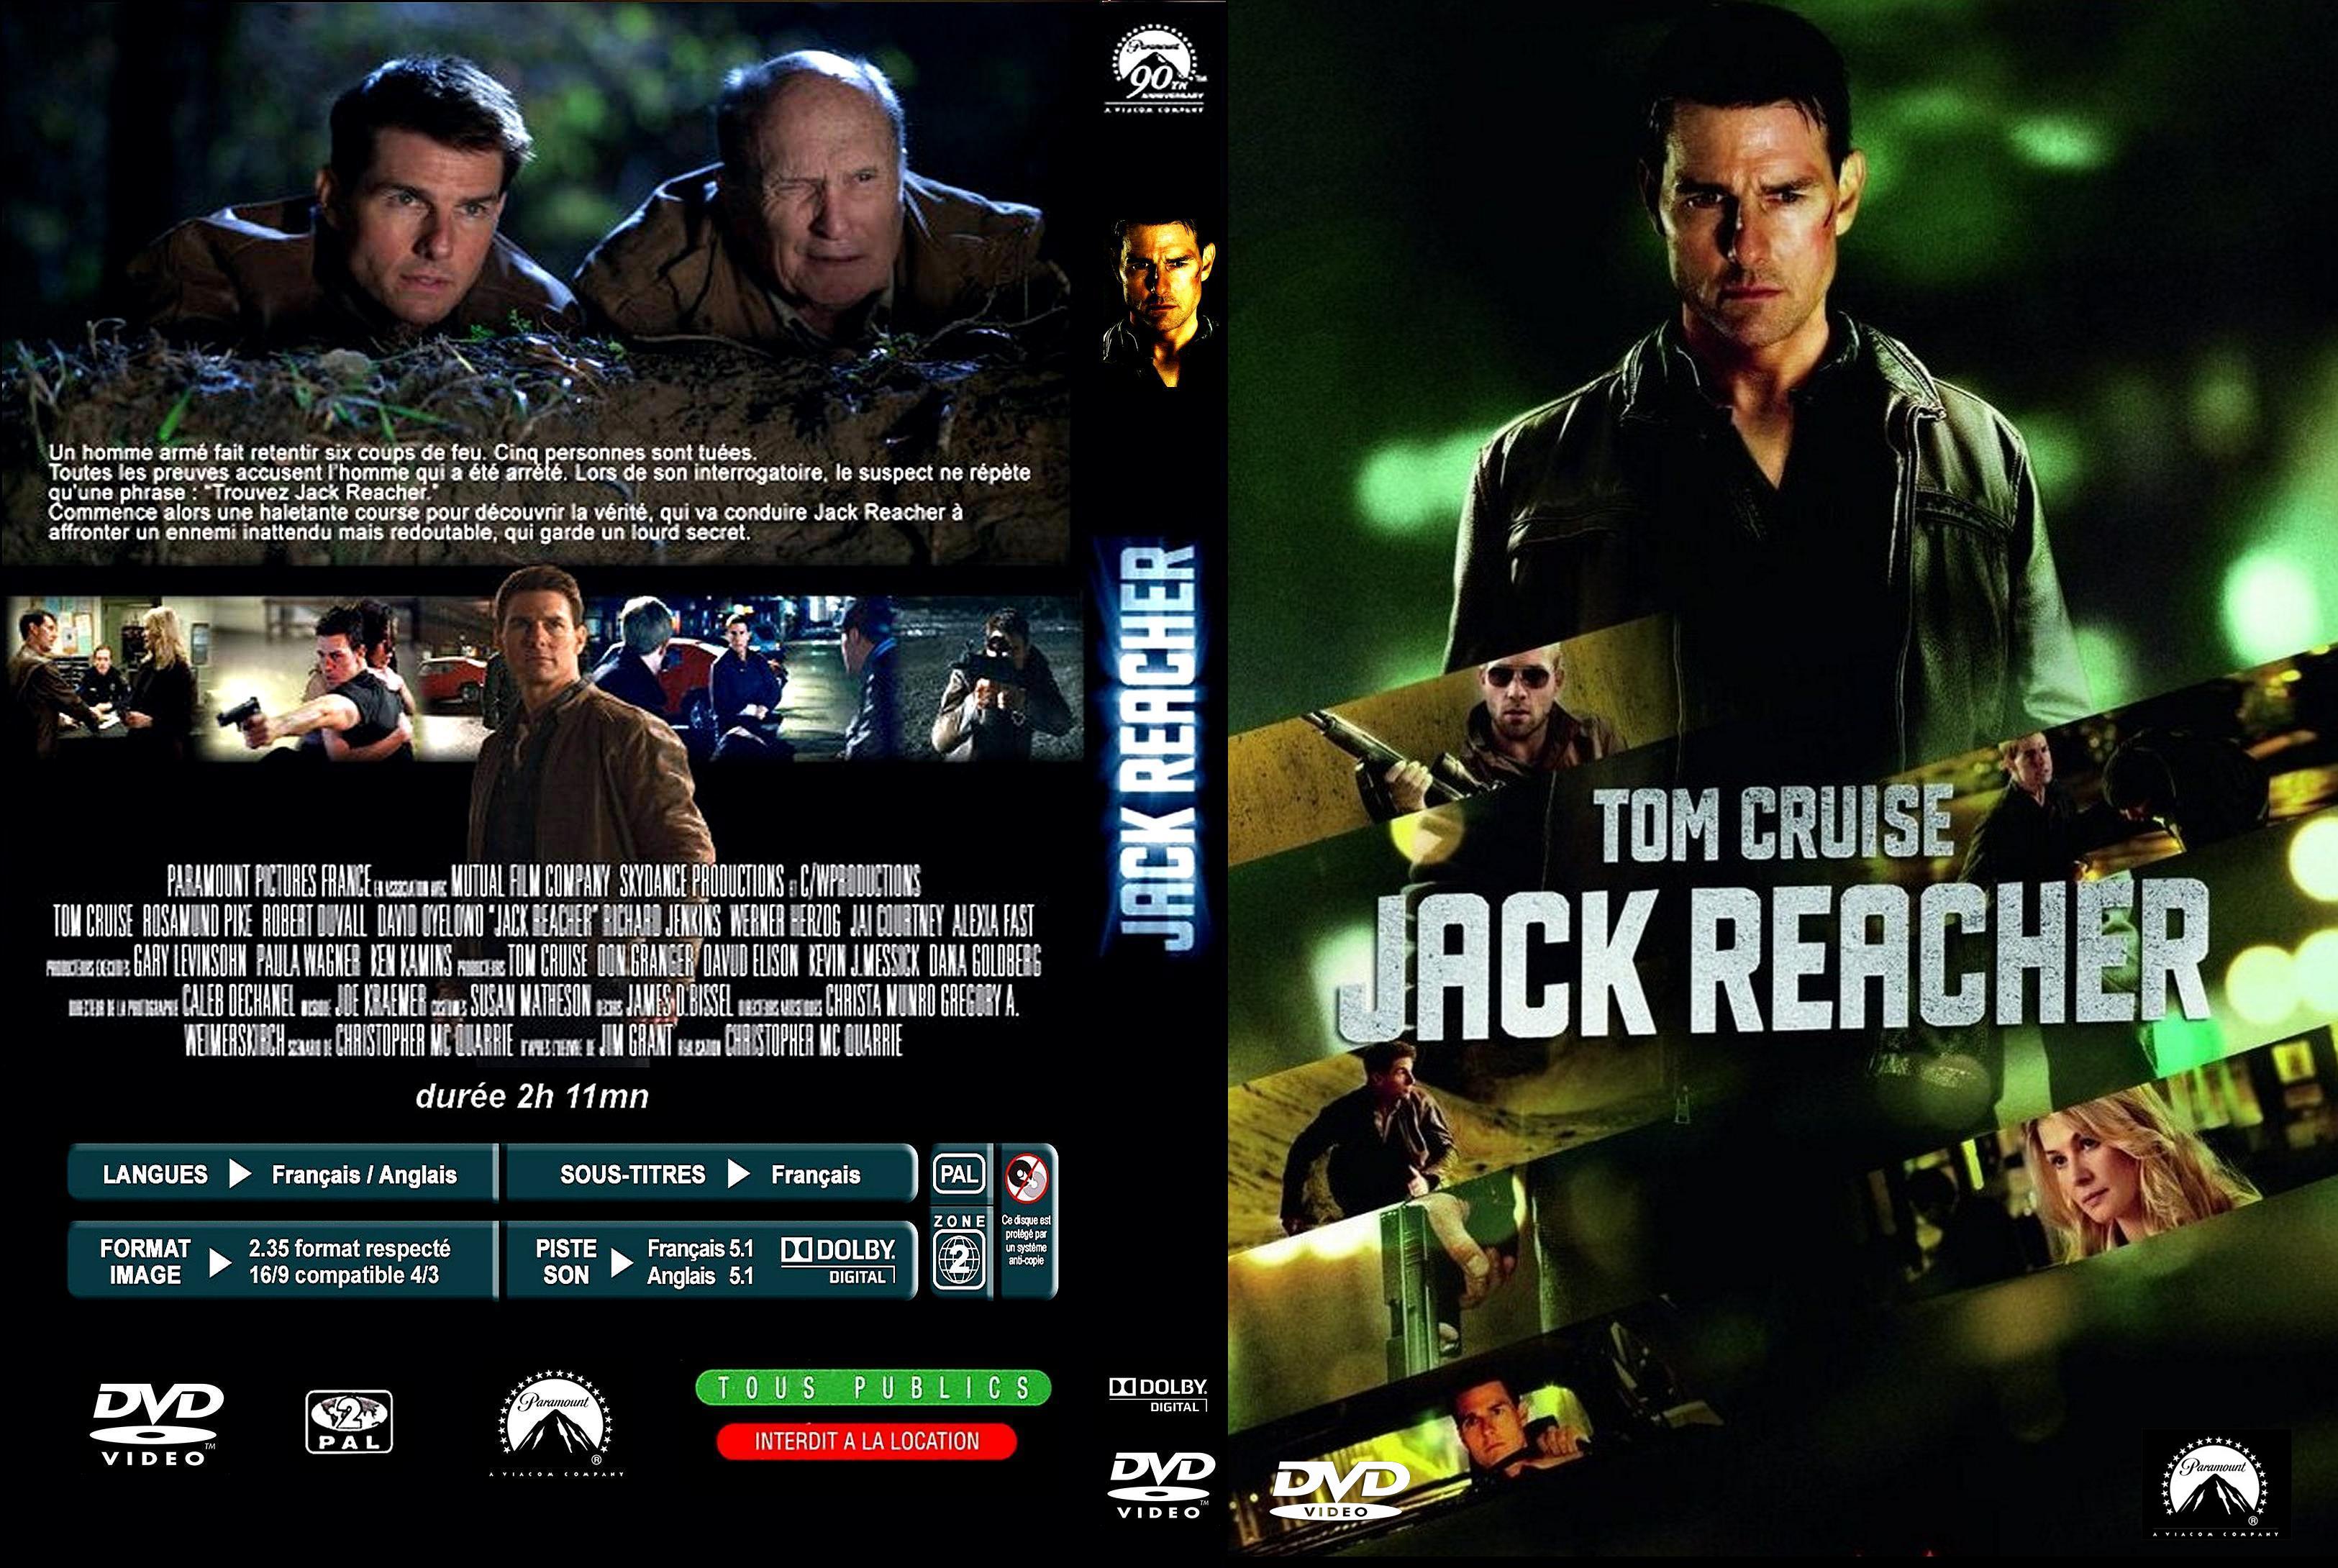 Jaquette DVD Jack Reacher custom v2